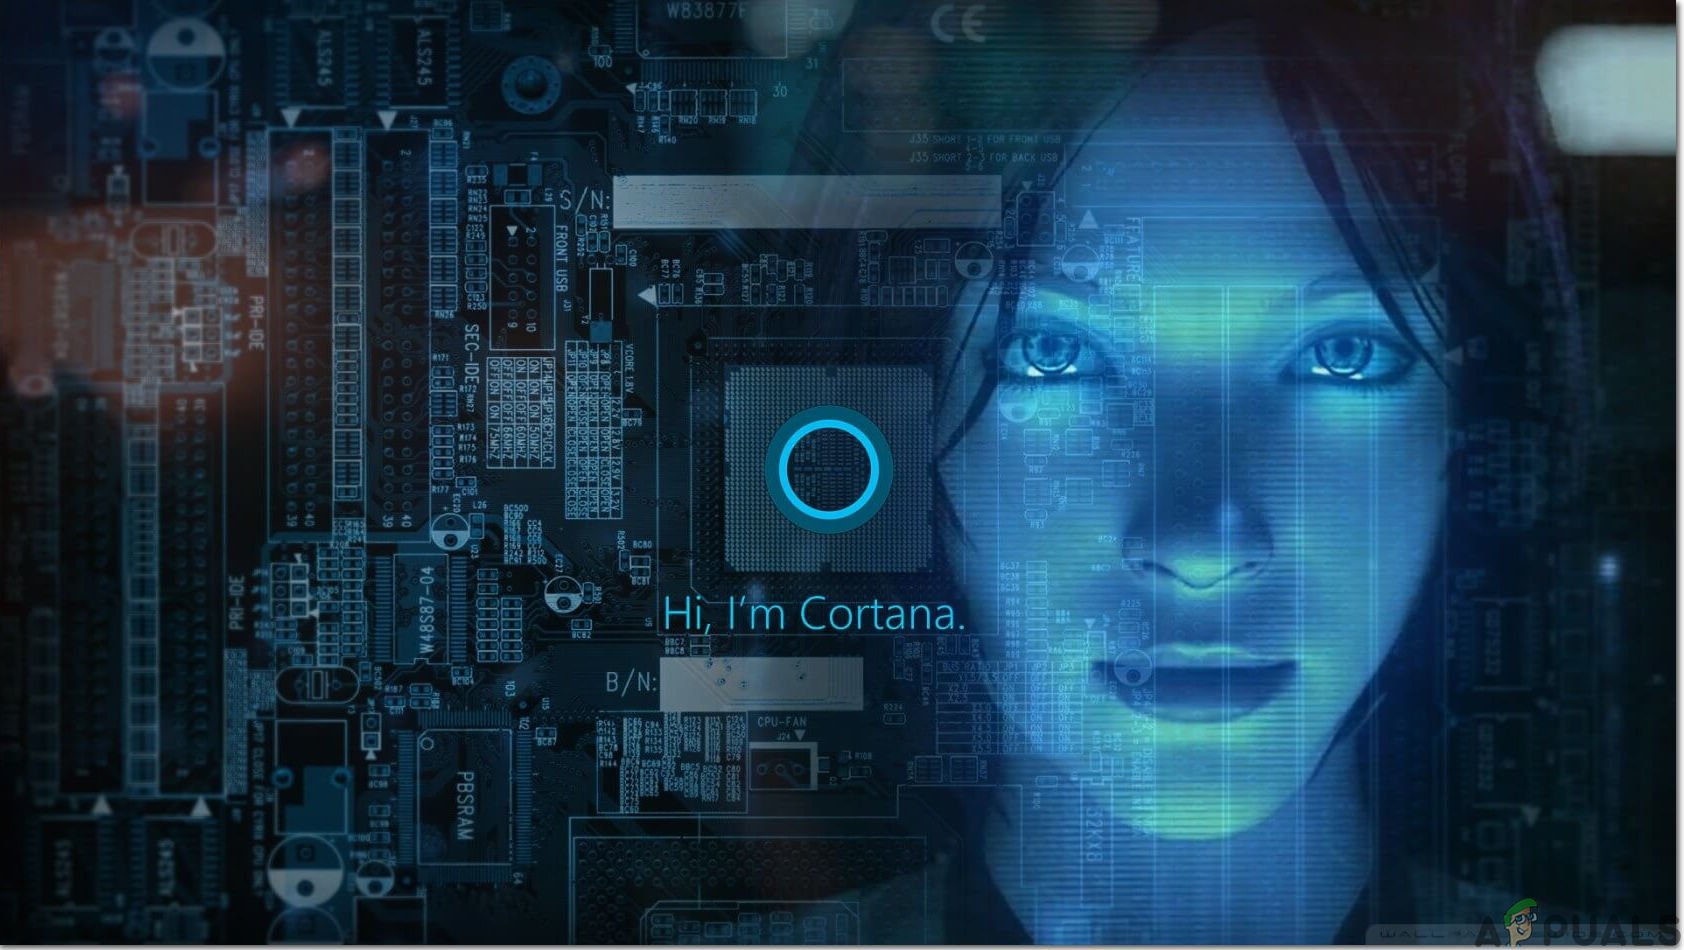 Atualização do Windows 10 20H1 de maio de 2020 v2004 que causa o erro ‘Cortana não está disponível’, veja como corrigir